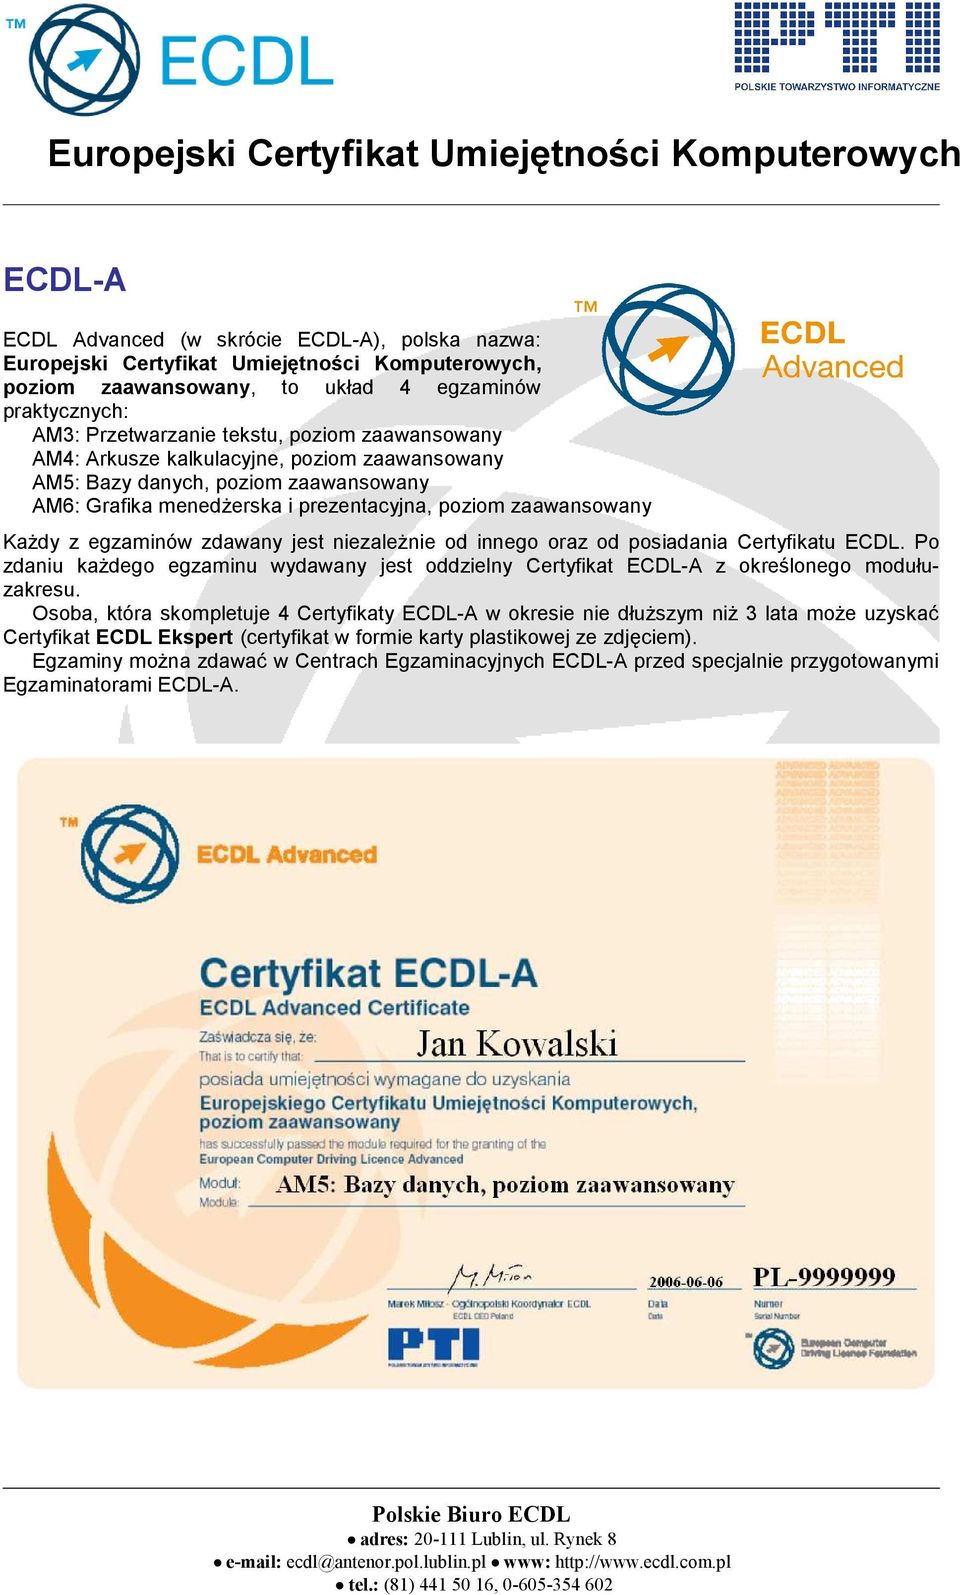 niezależnie od innego oraz od posiadania Certyfikatu ECDL. Po zdaniu każdego egzaminu wydawany jest oddzielny Certyfikat ECDL-A z określonego modułuzakresu.